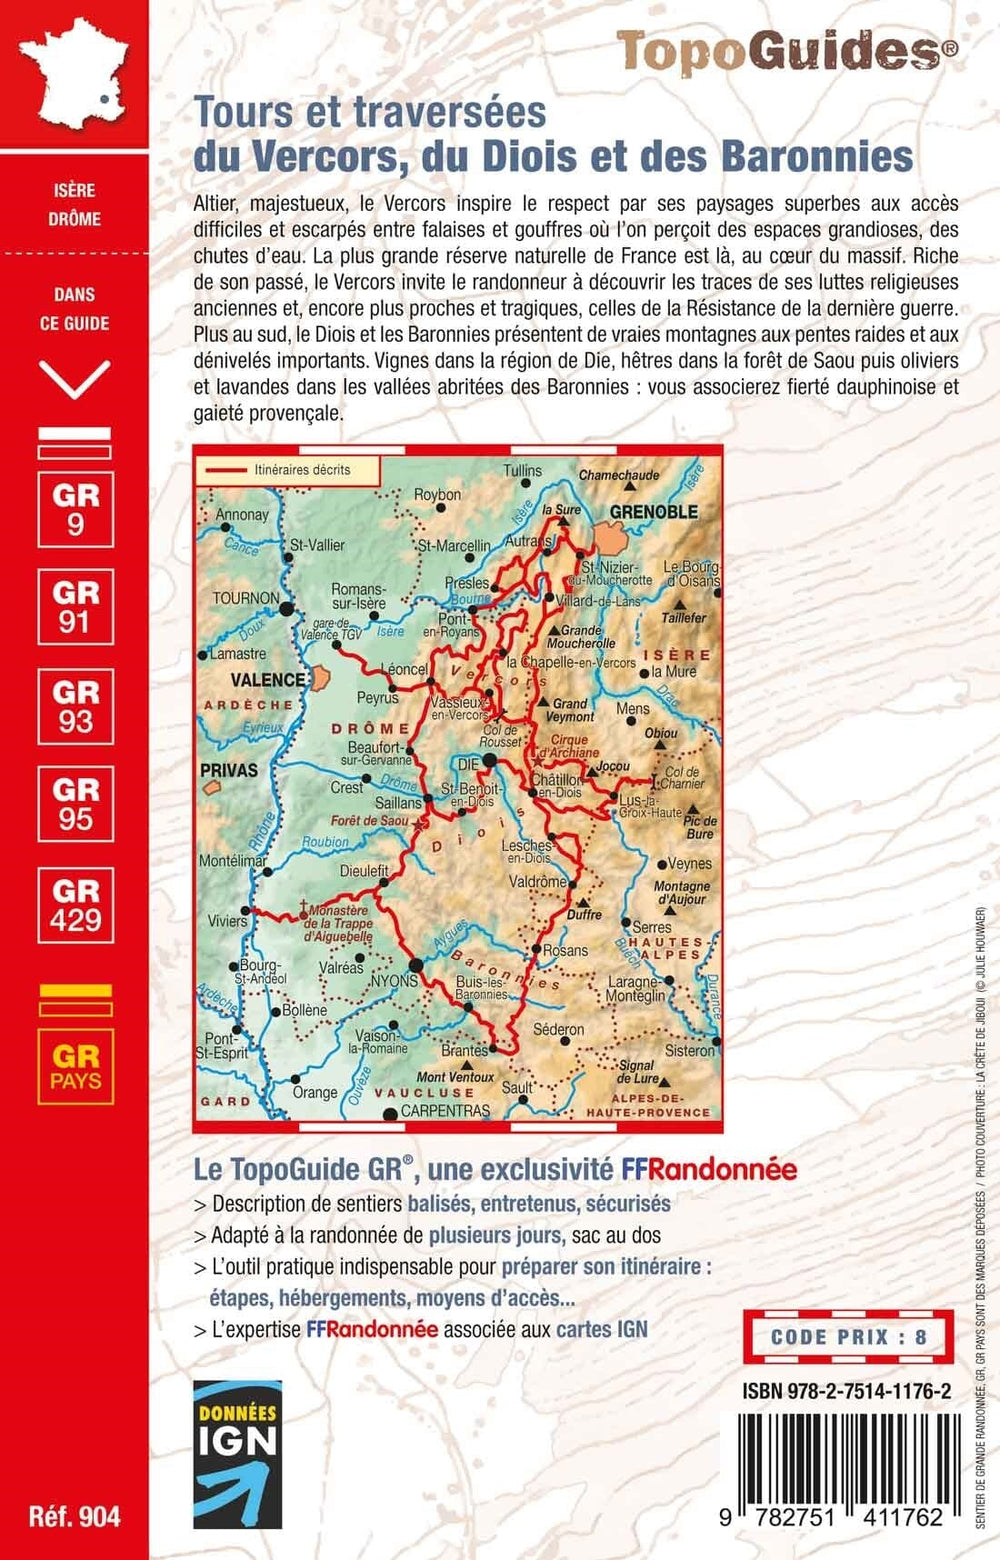 Topoguide de randonnée - Tours et traversées du Vercors, du Diois et des Baronnies - GR9 / GR91 / GR93 / GR95 / GR429 | FFR guide de randonnée FFR - Fédération Française de Randonnée 